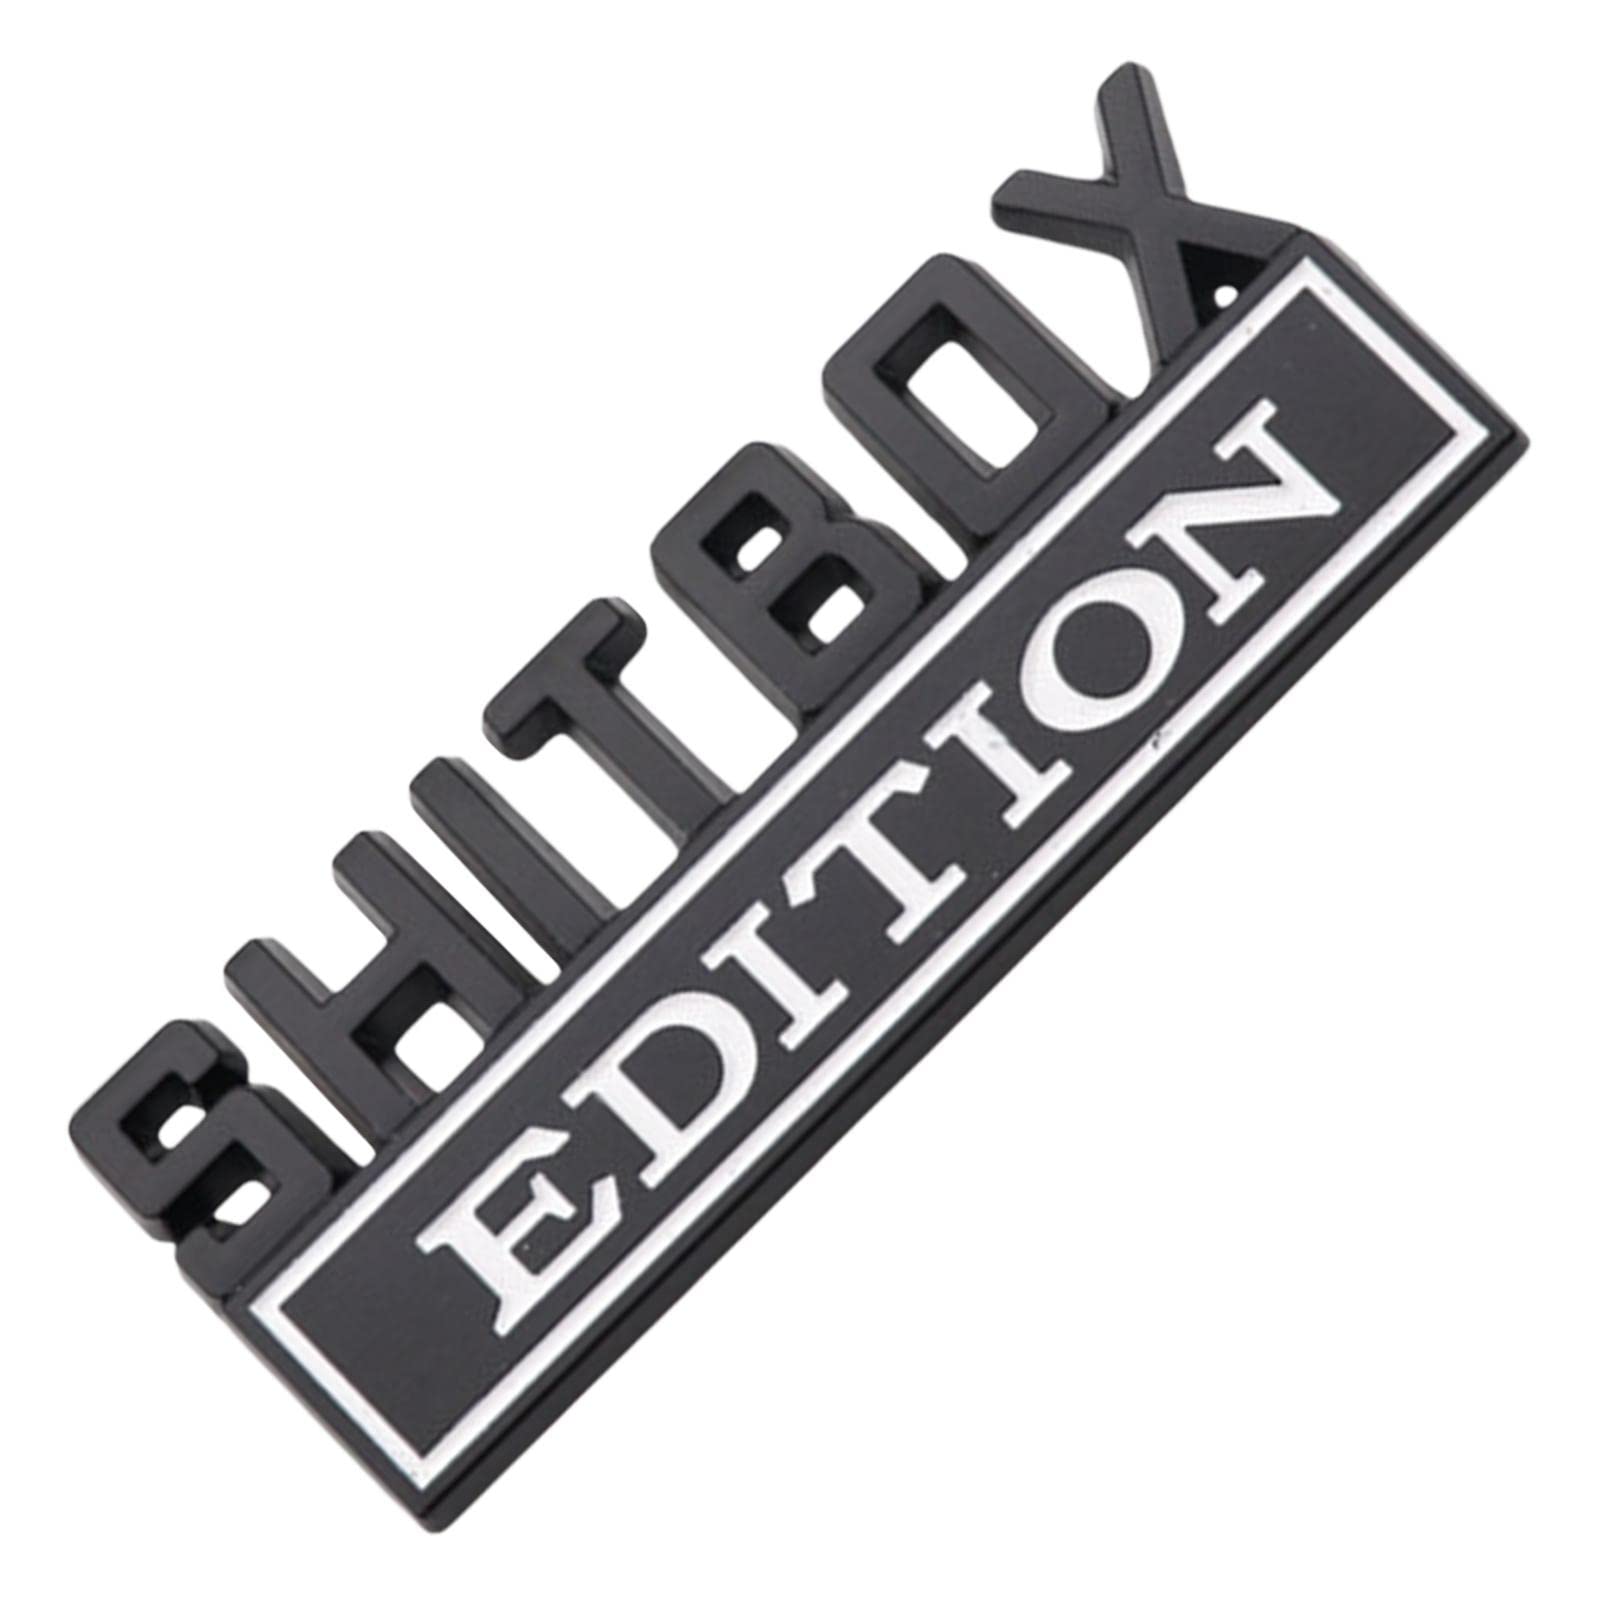 1x3D Auto Shitbox Edition Abzeichen, stark klebende Shitbox Aufkleber, Vehicle Sticker Decal, Auto Tail Side Emblem Zubehör, einfach zu bedienen, 6.9x1.5in von Niktule